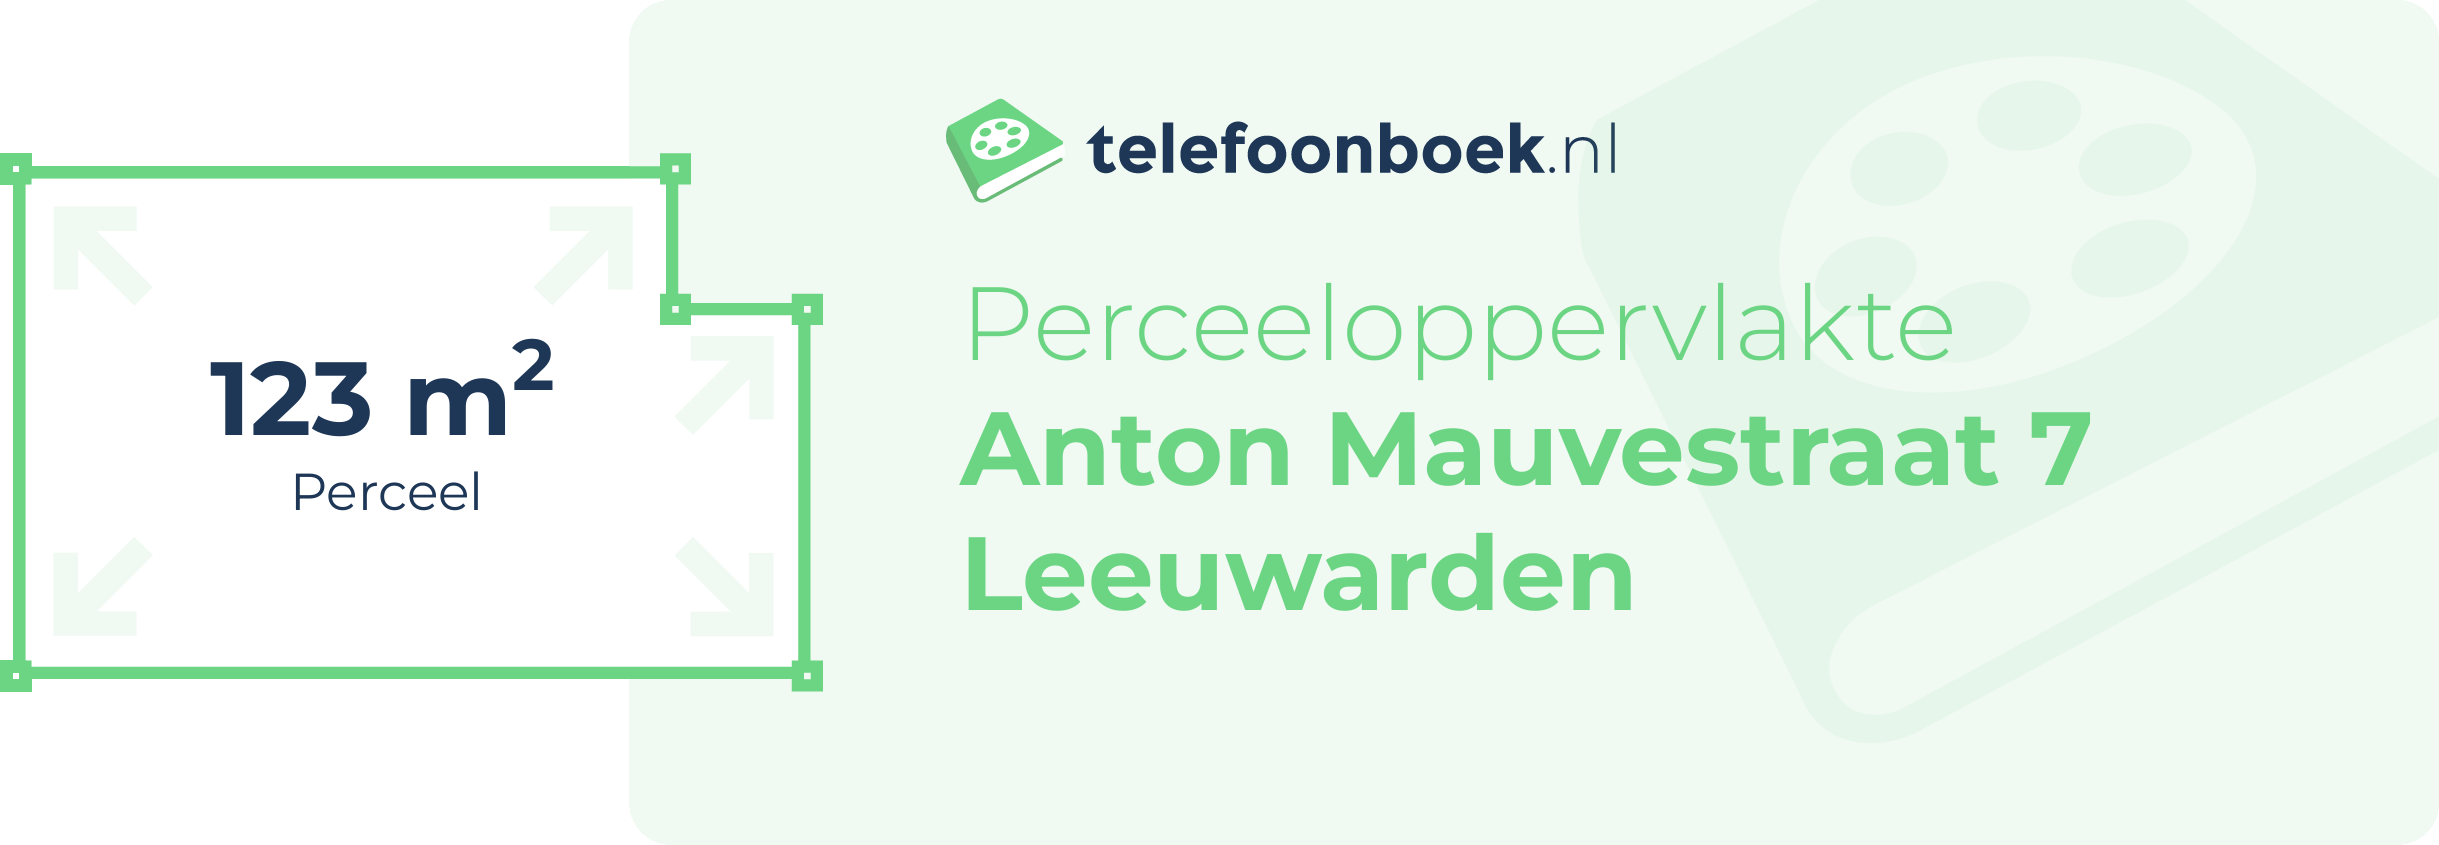 Perceeloppervlakte Anton Mauvestraat 7 Leeuwarden